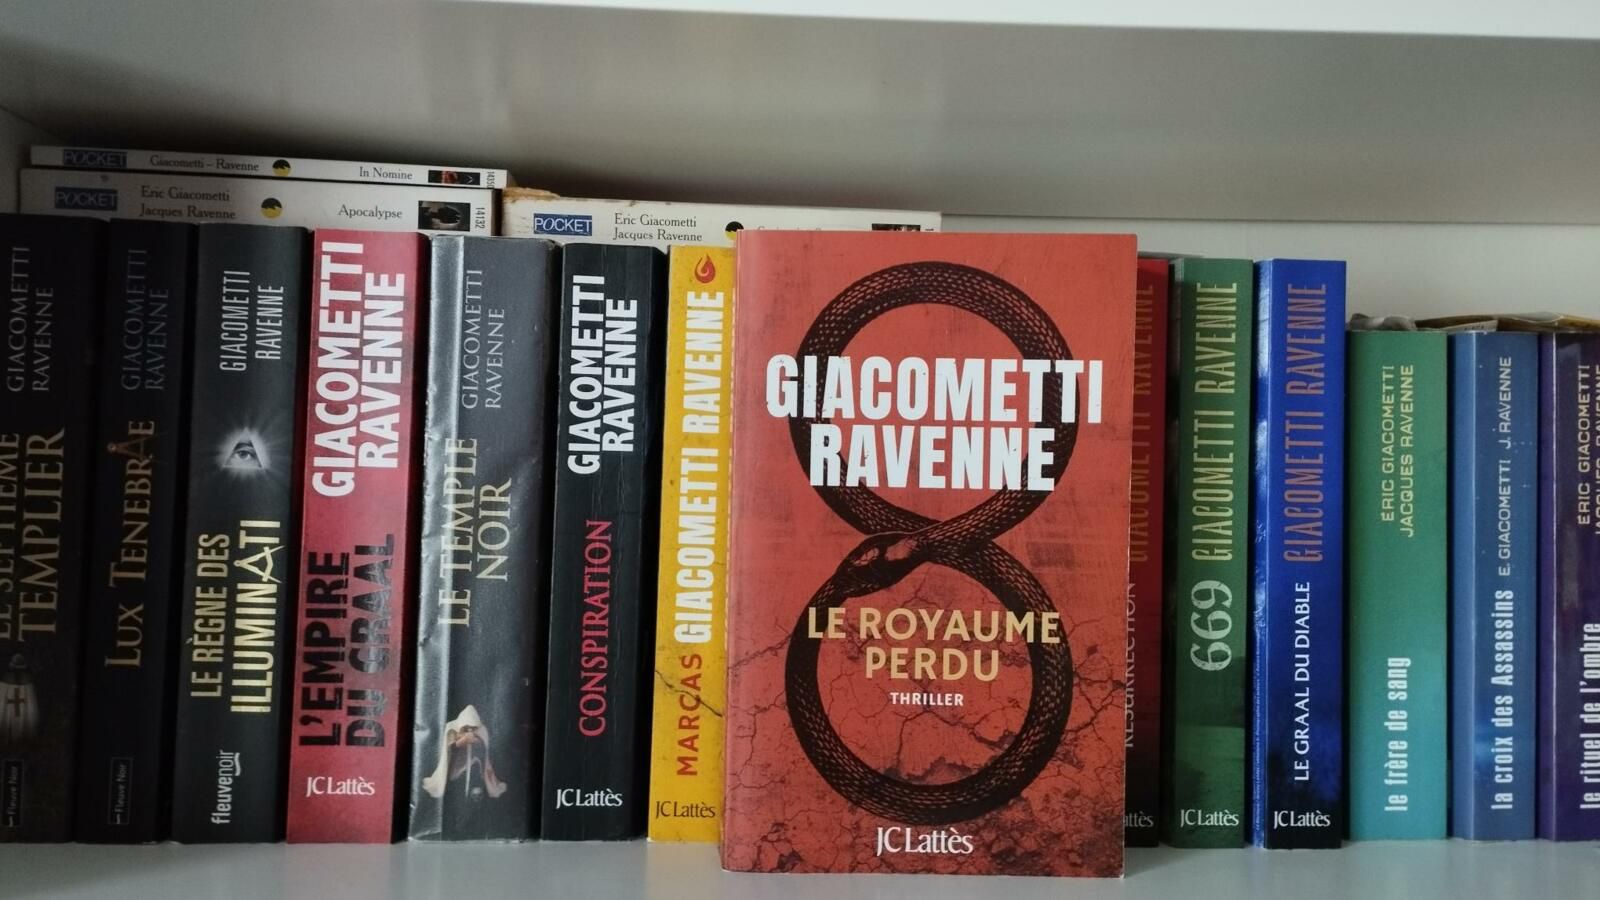 Le royaume perdu, ravenne et Giacometti, édition JC Lattès, thriller, Franc-maçon, lecture, 